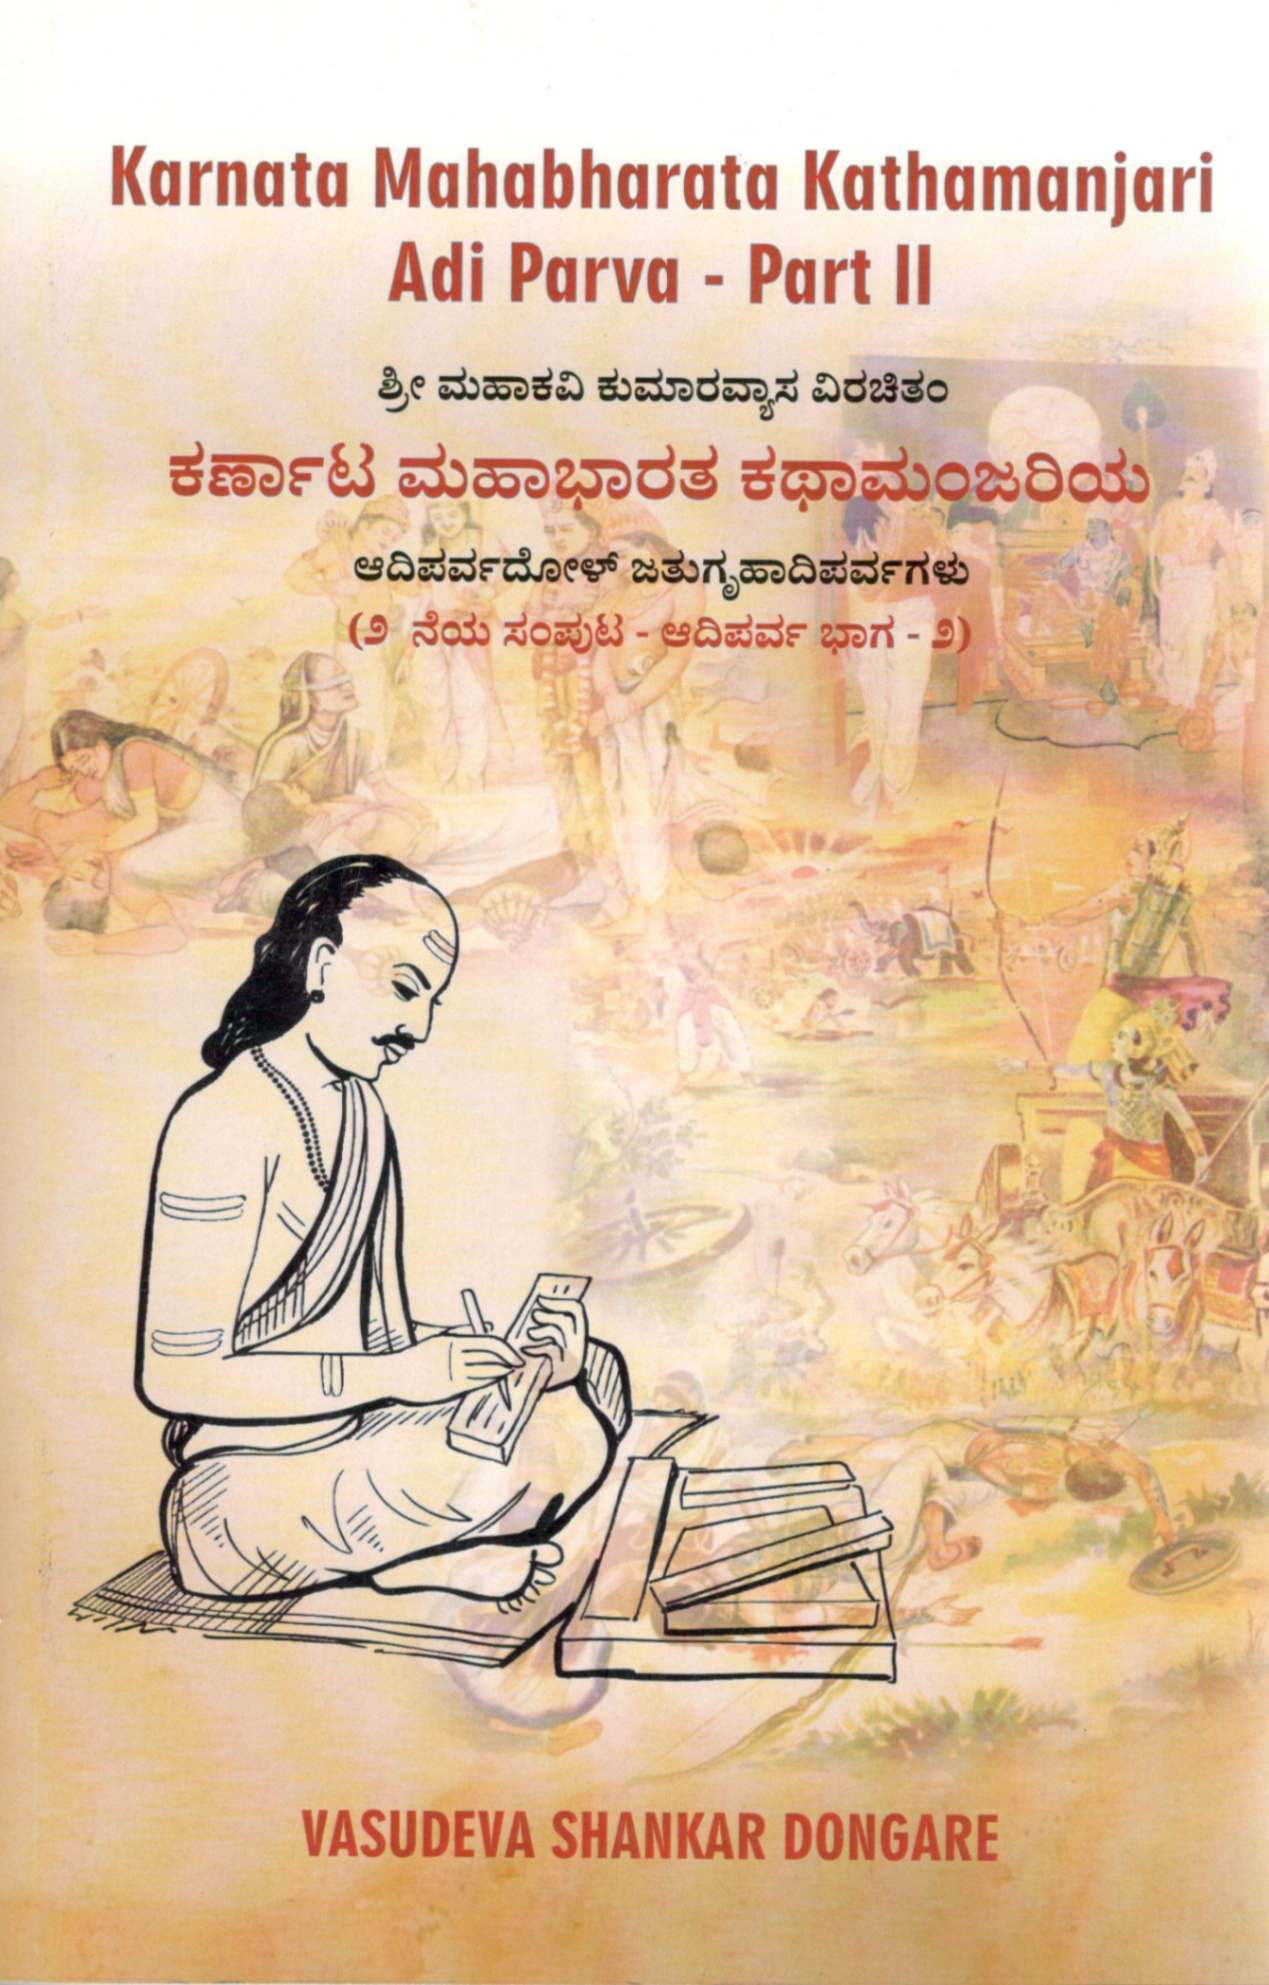 karnata-mahabharat-book-cover-2